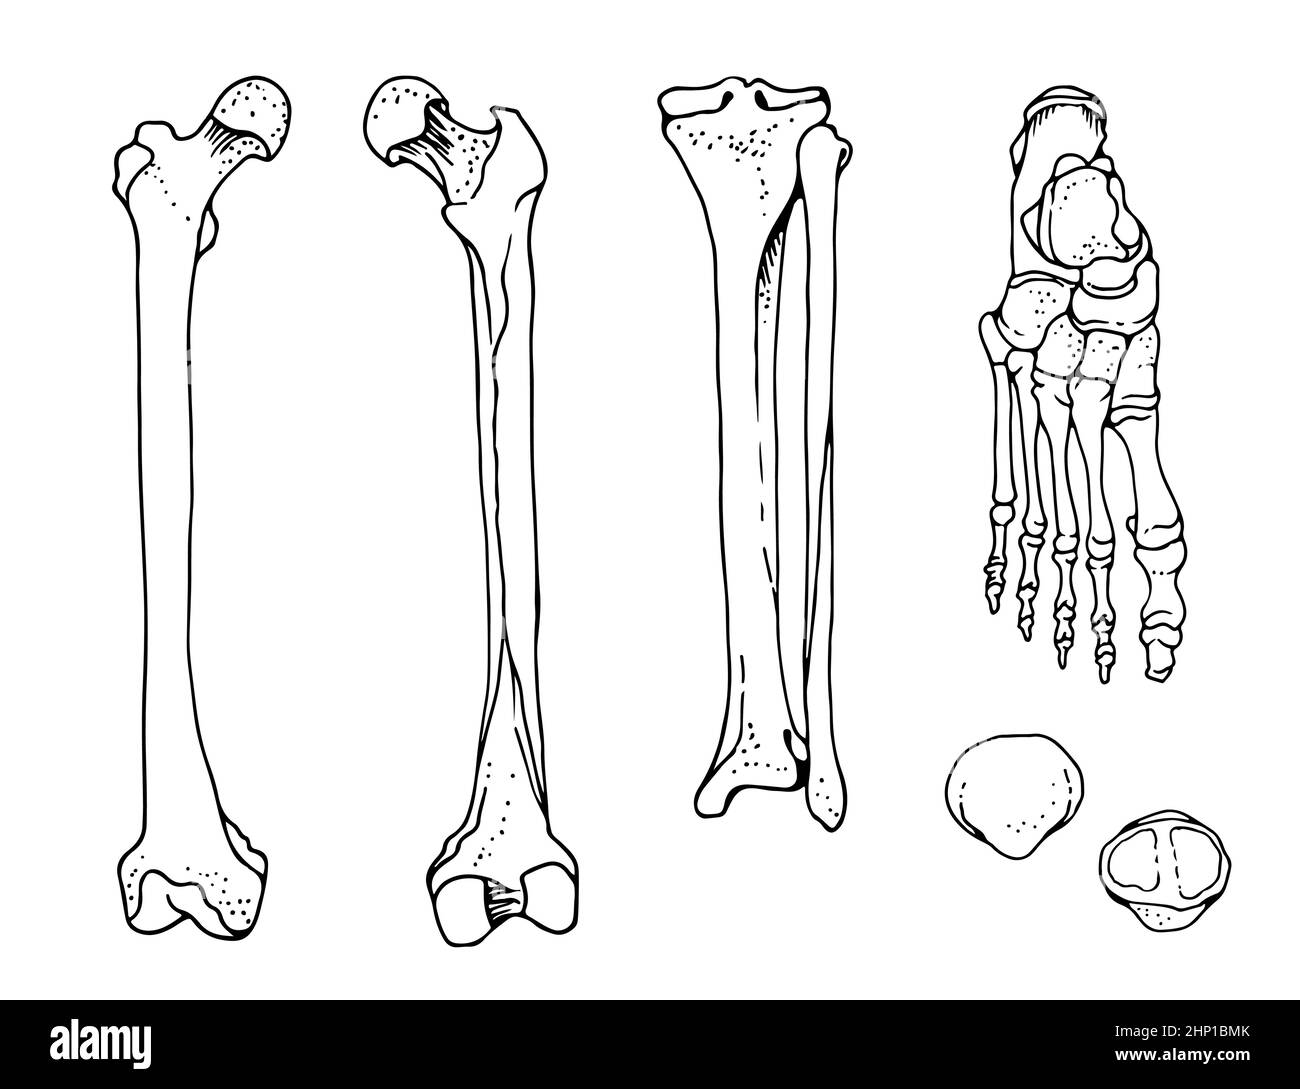 Menschliche Fußknochen, Oberschenkel, Tibia und Fibula, Fuß, Patella, handgezeichnete Vektorgrafik isoliert auf weißem Hintergrund, orthopädische Anatomie Stock Vektor